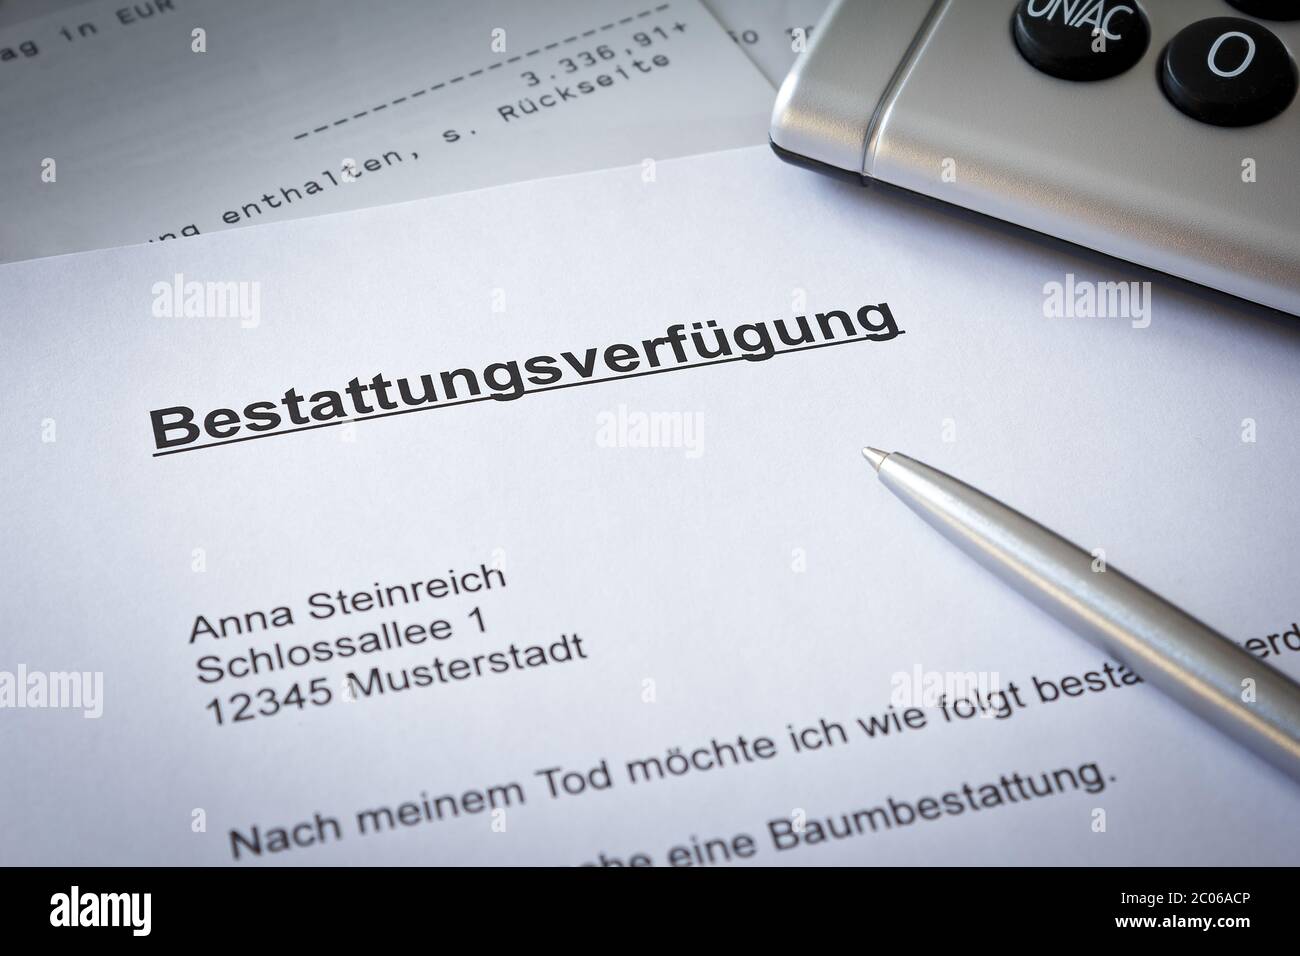 German advance funeral directive paper with bank statement: bestattungsverfügung Stock Photo